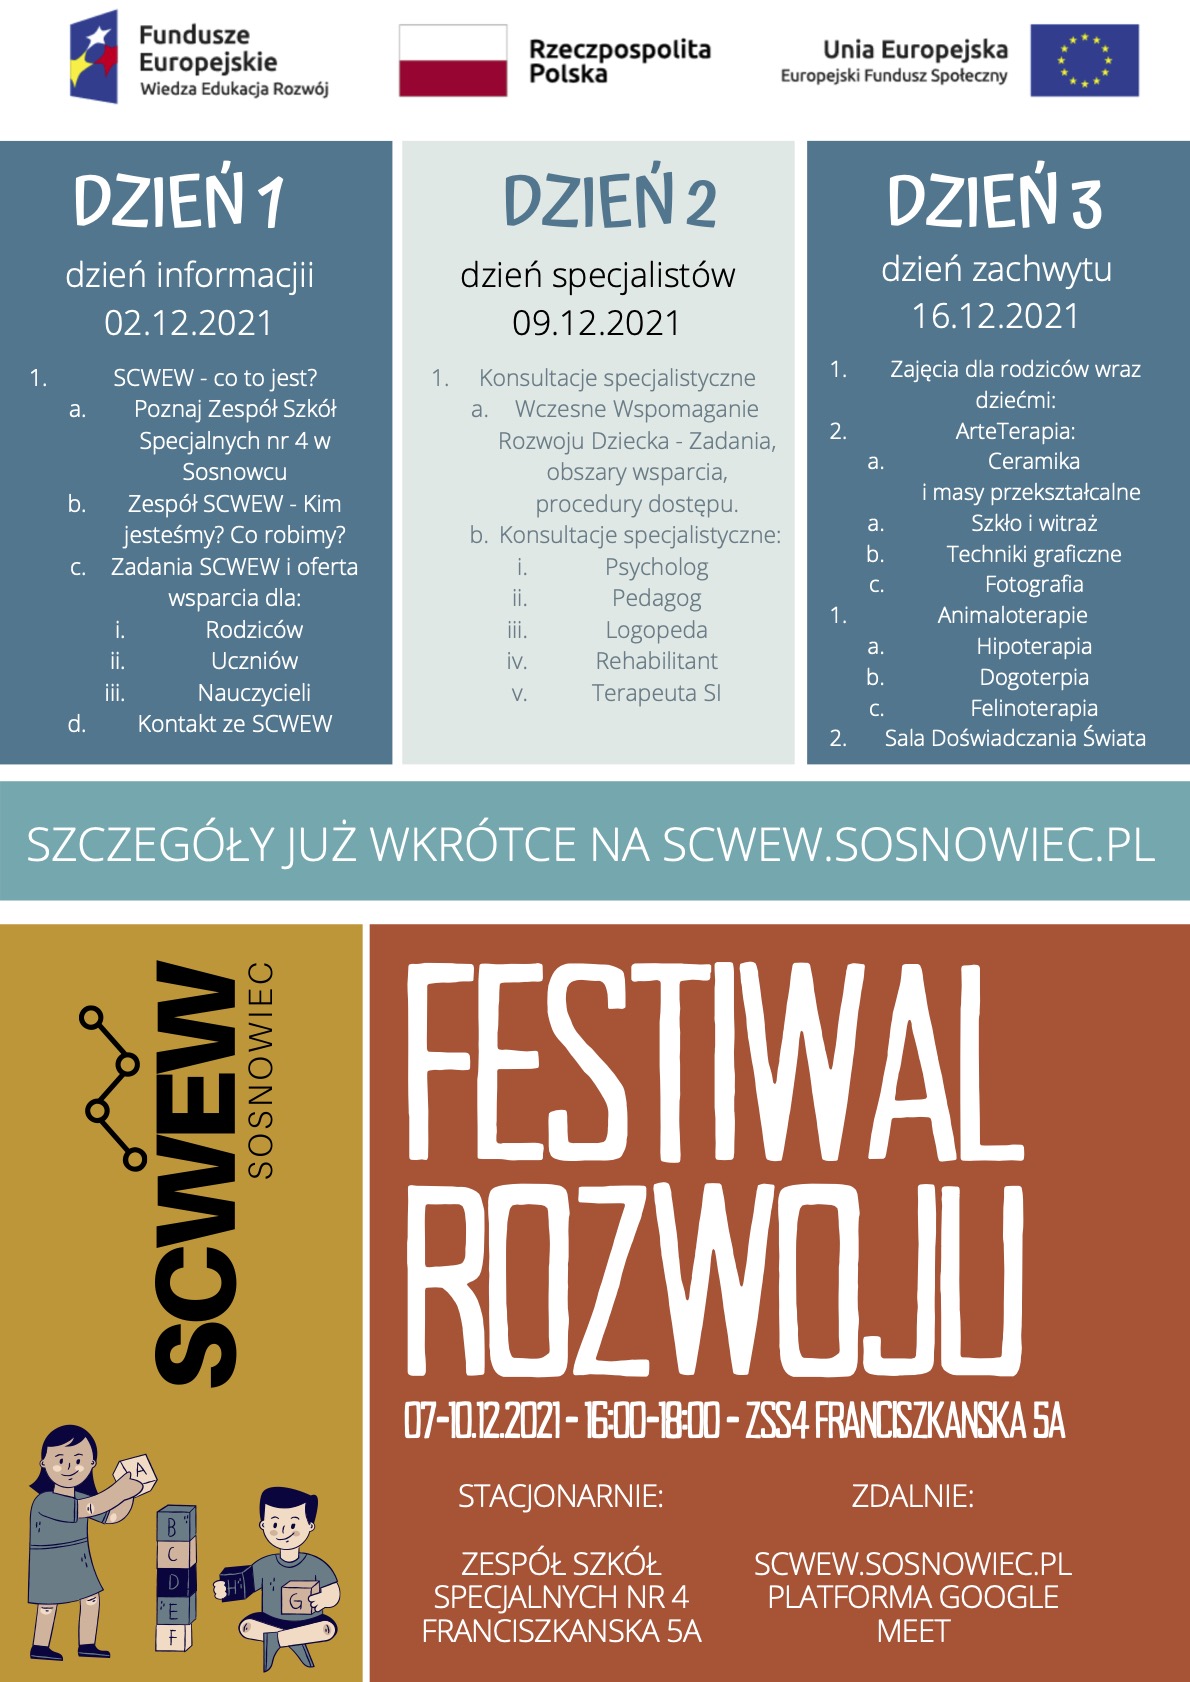 Festiwal Rozwoju spotkania dla rodzicow 2 16.12 2